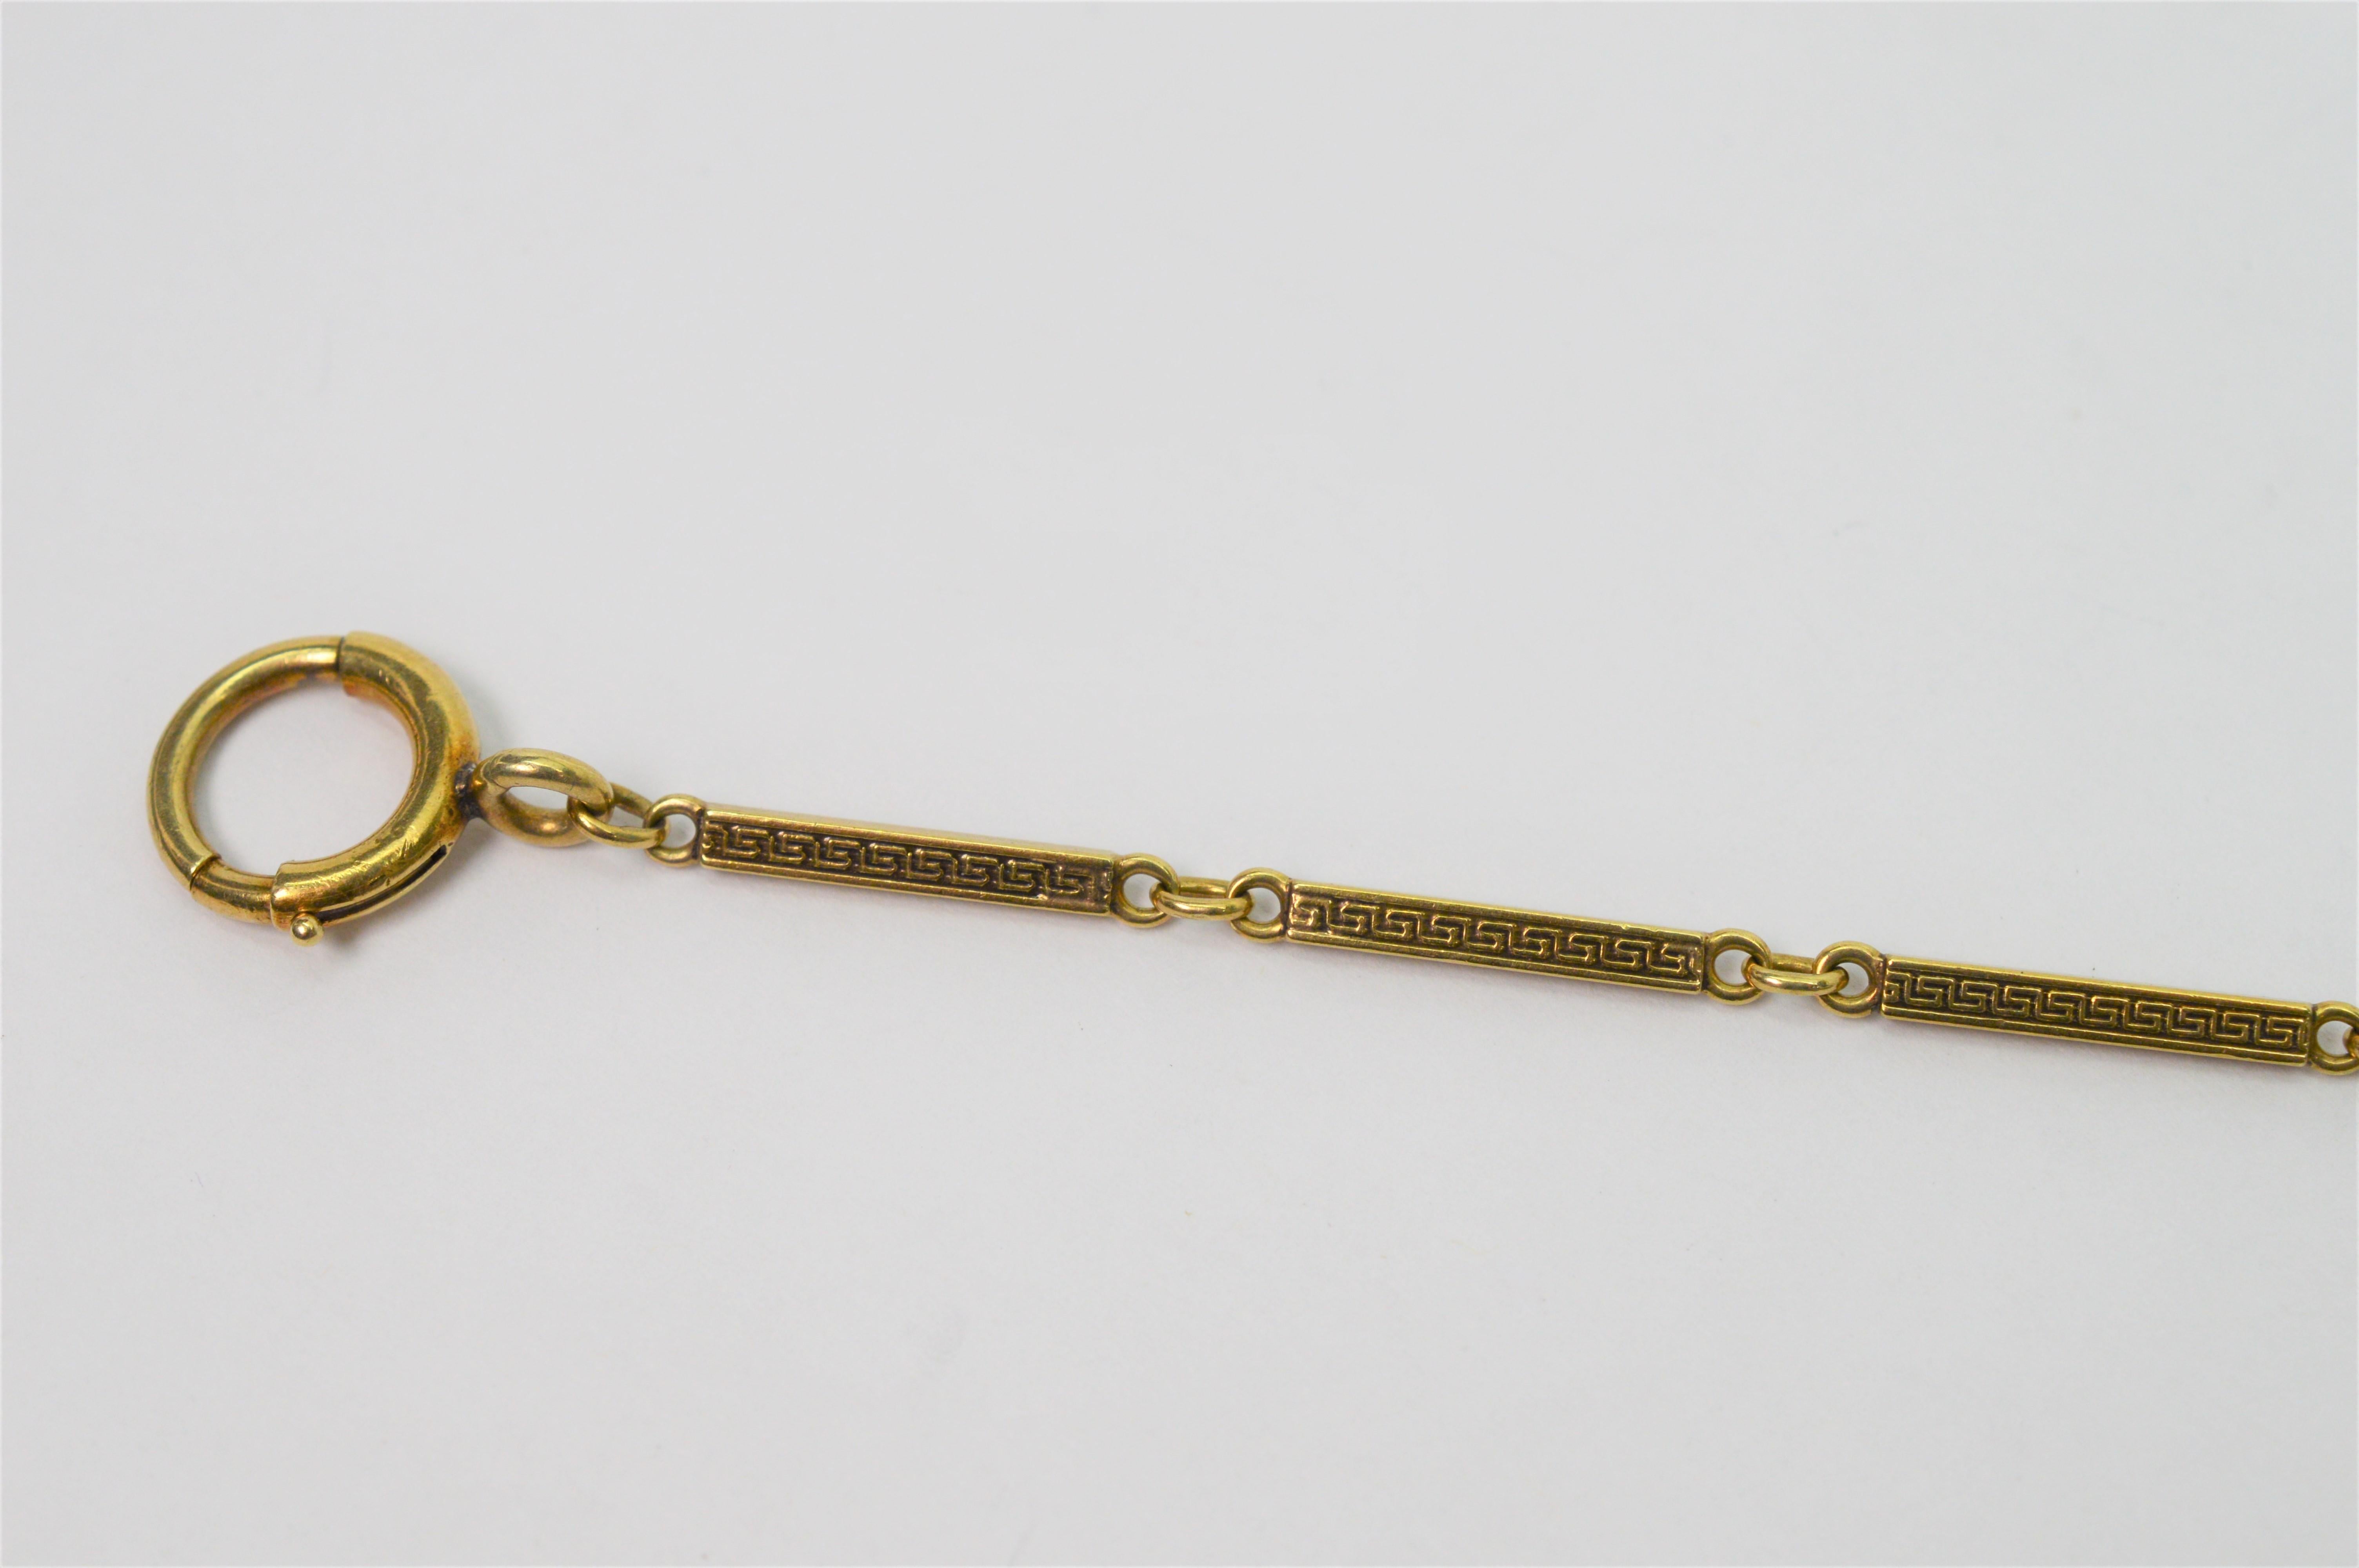 antique gold pocket watch chain